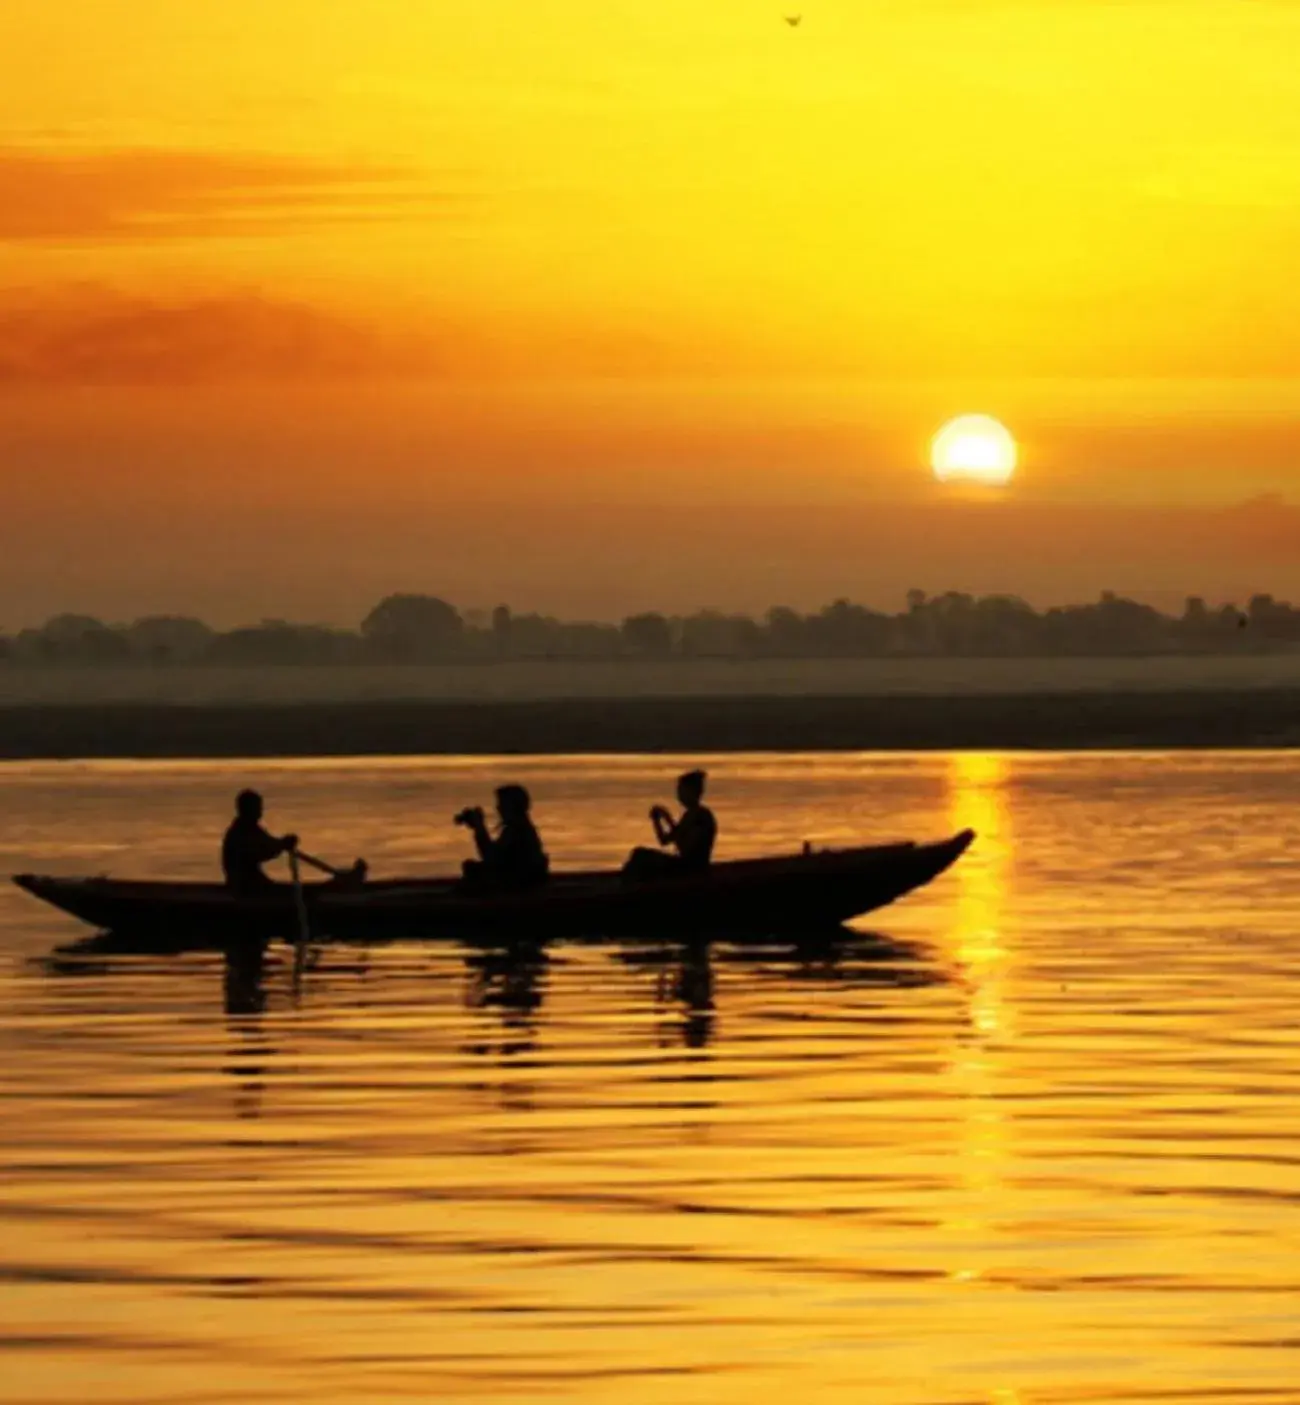 River view, Sunrise/Sunset in Suryauday Haveli - An Amritara Resort